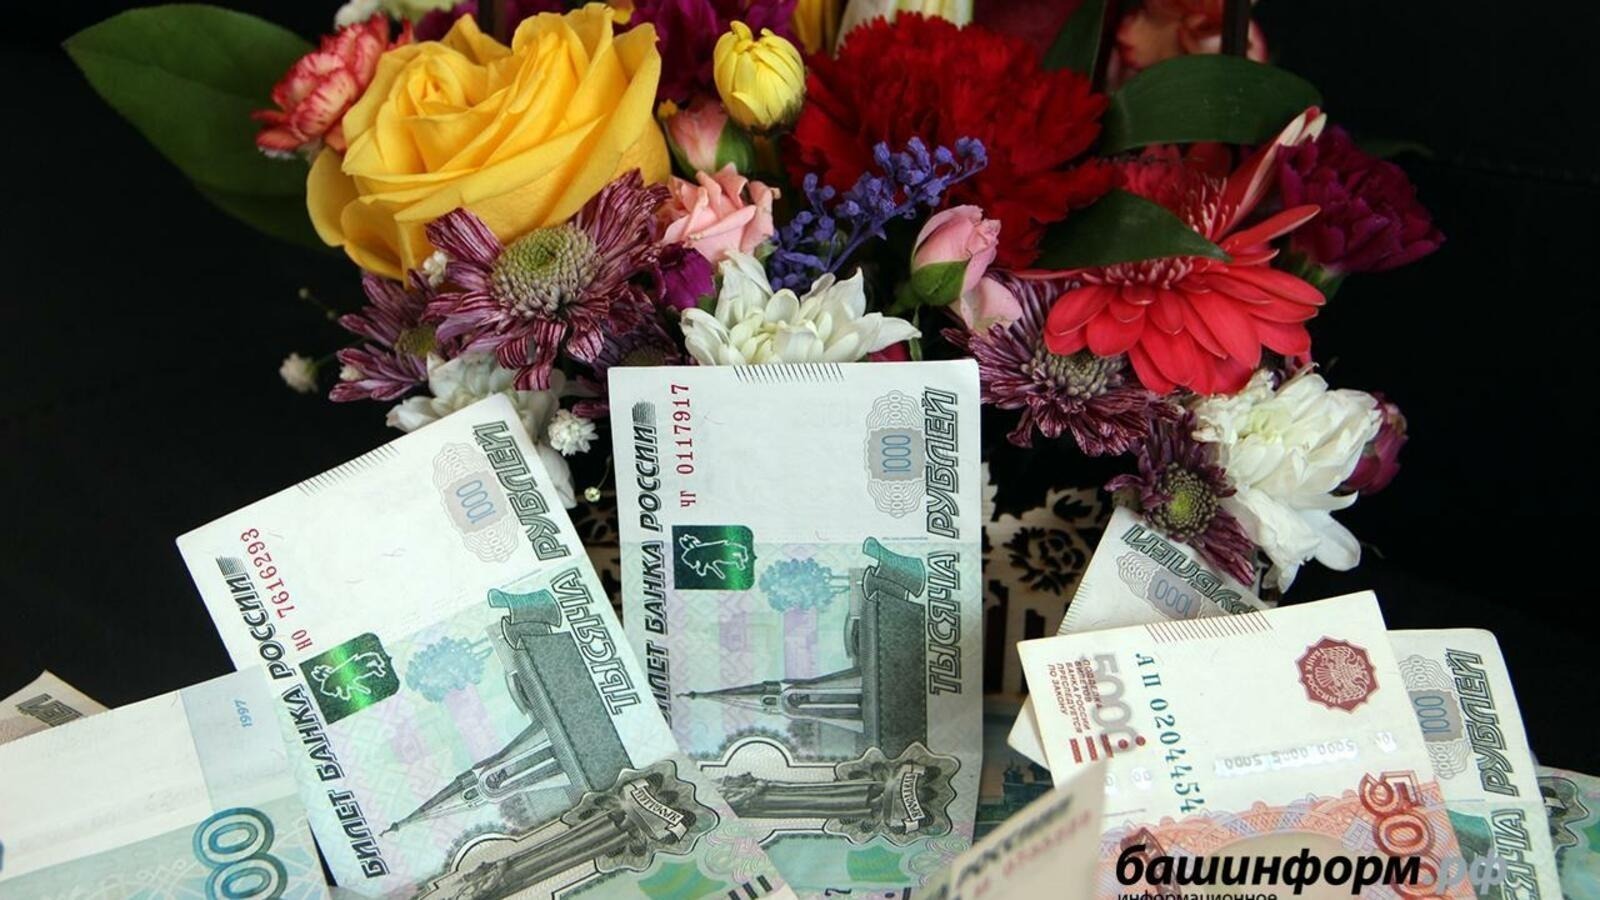 Президентский фонд культурных инициатив дал добро на 19 проектов Башкирии суммой 16 млн рублей